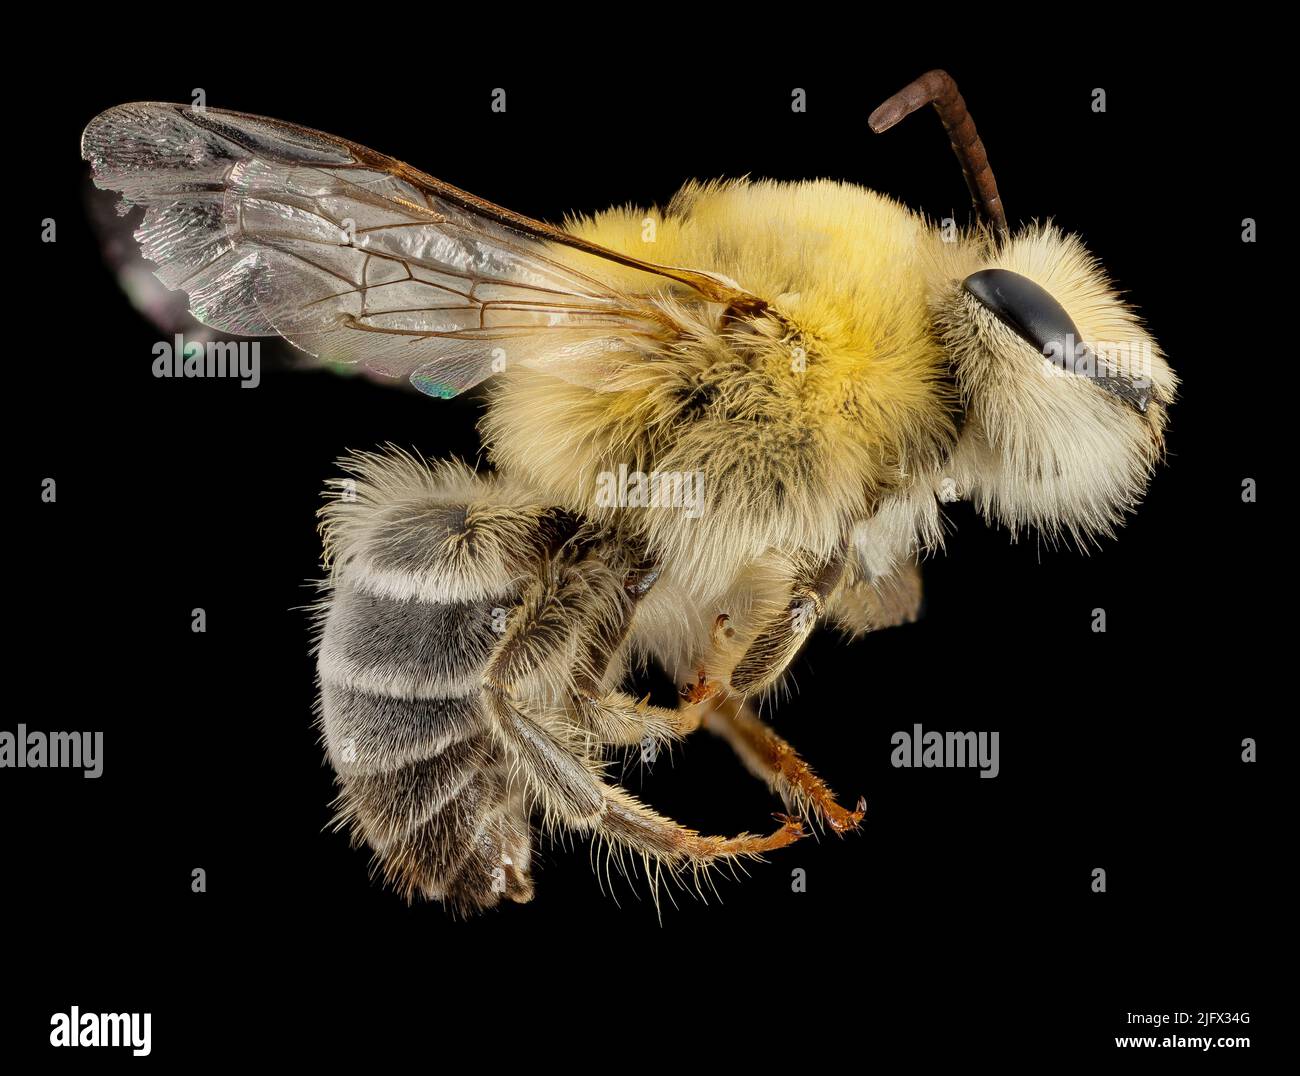 Bartbiene aus Argentinien, klassifiziert als Mourecotelles; unbekannte Hairyye Bee. Gefunden in den westlichen gemäßigten Regionen Südamerikas. Es gehört zu einer wenig untersuchten Gruppe und die meisten der geleisteten Arbeiten stammen aus Museen, in denen 22 Arten aus verschiedenen Sammlungen beschrieben wurden. Gutschrift USGS/BIML Stockfoto